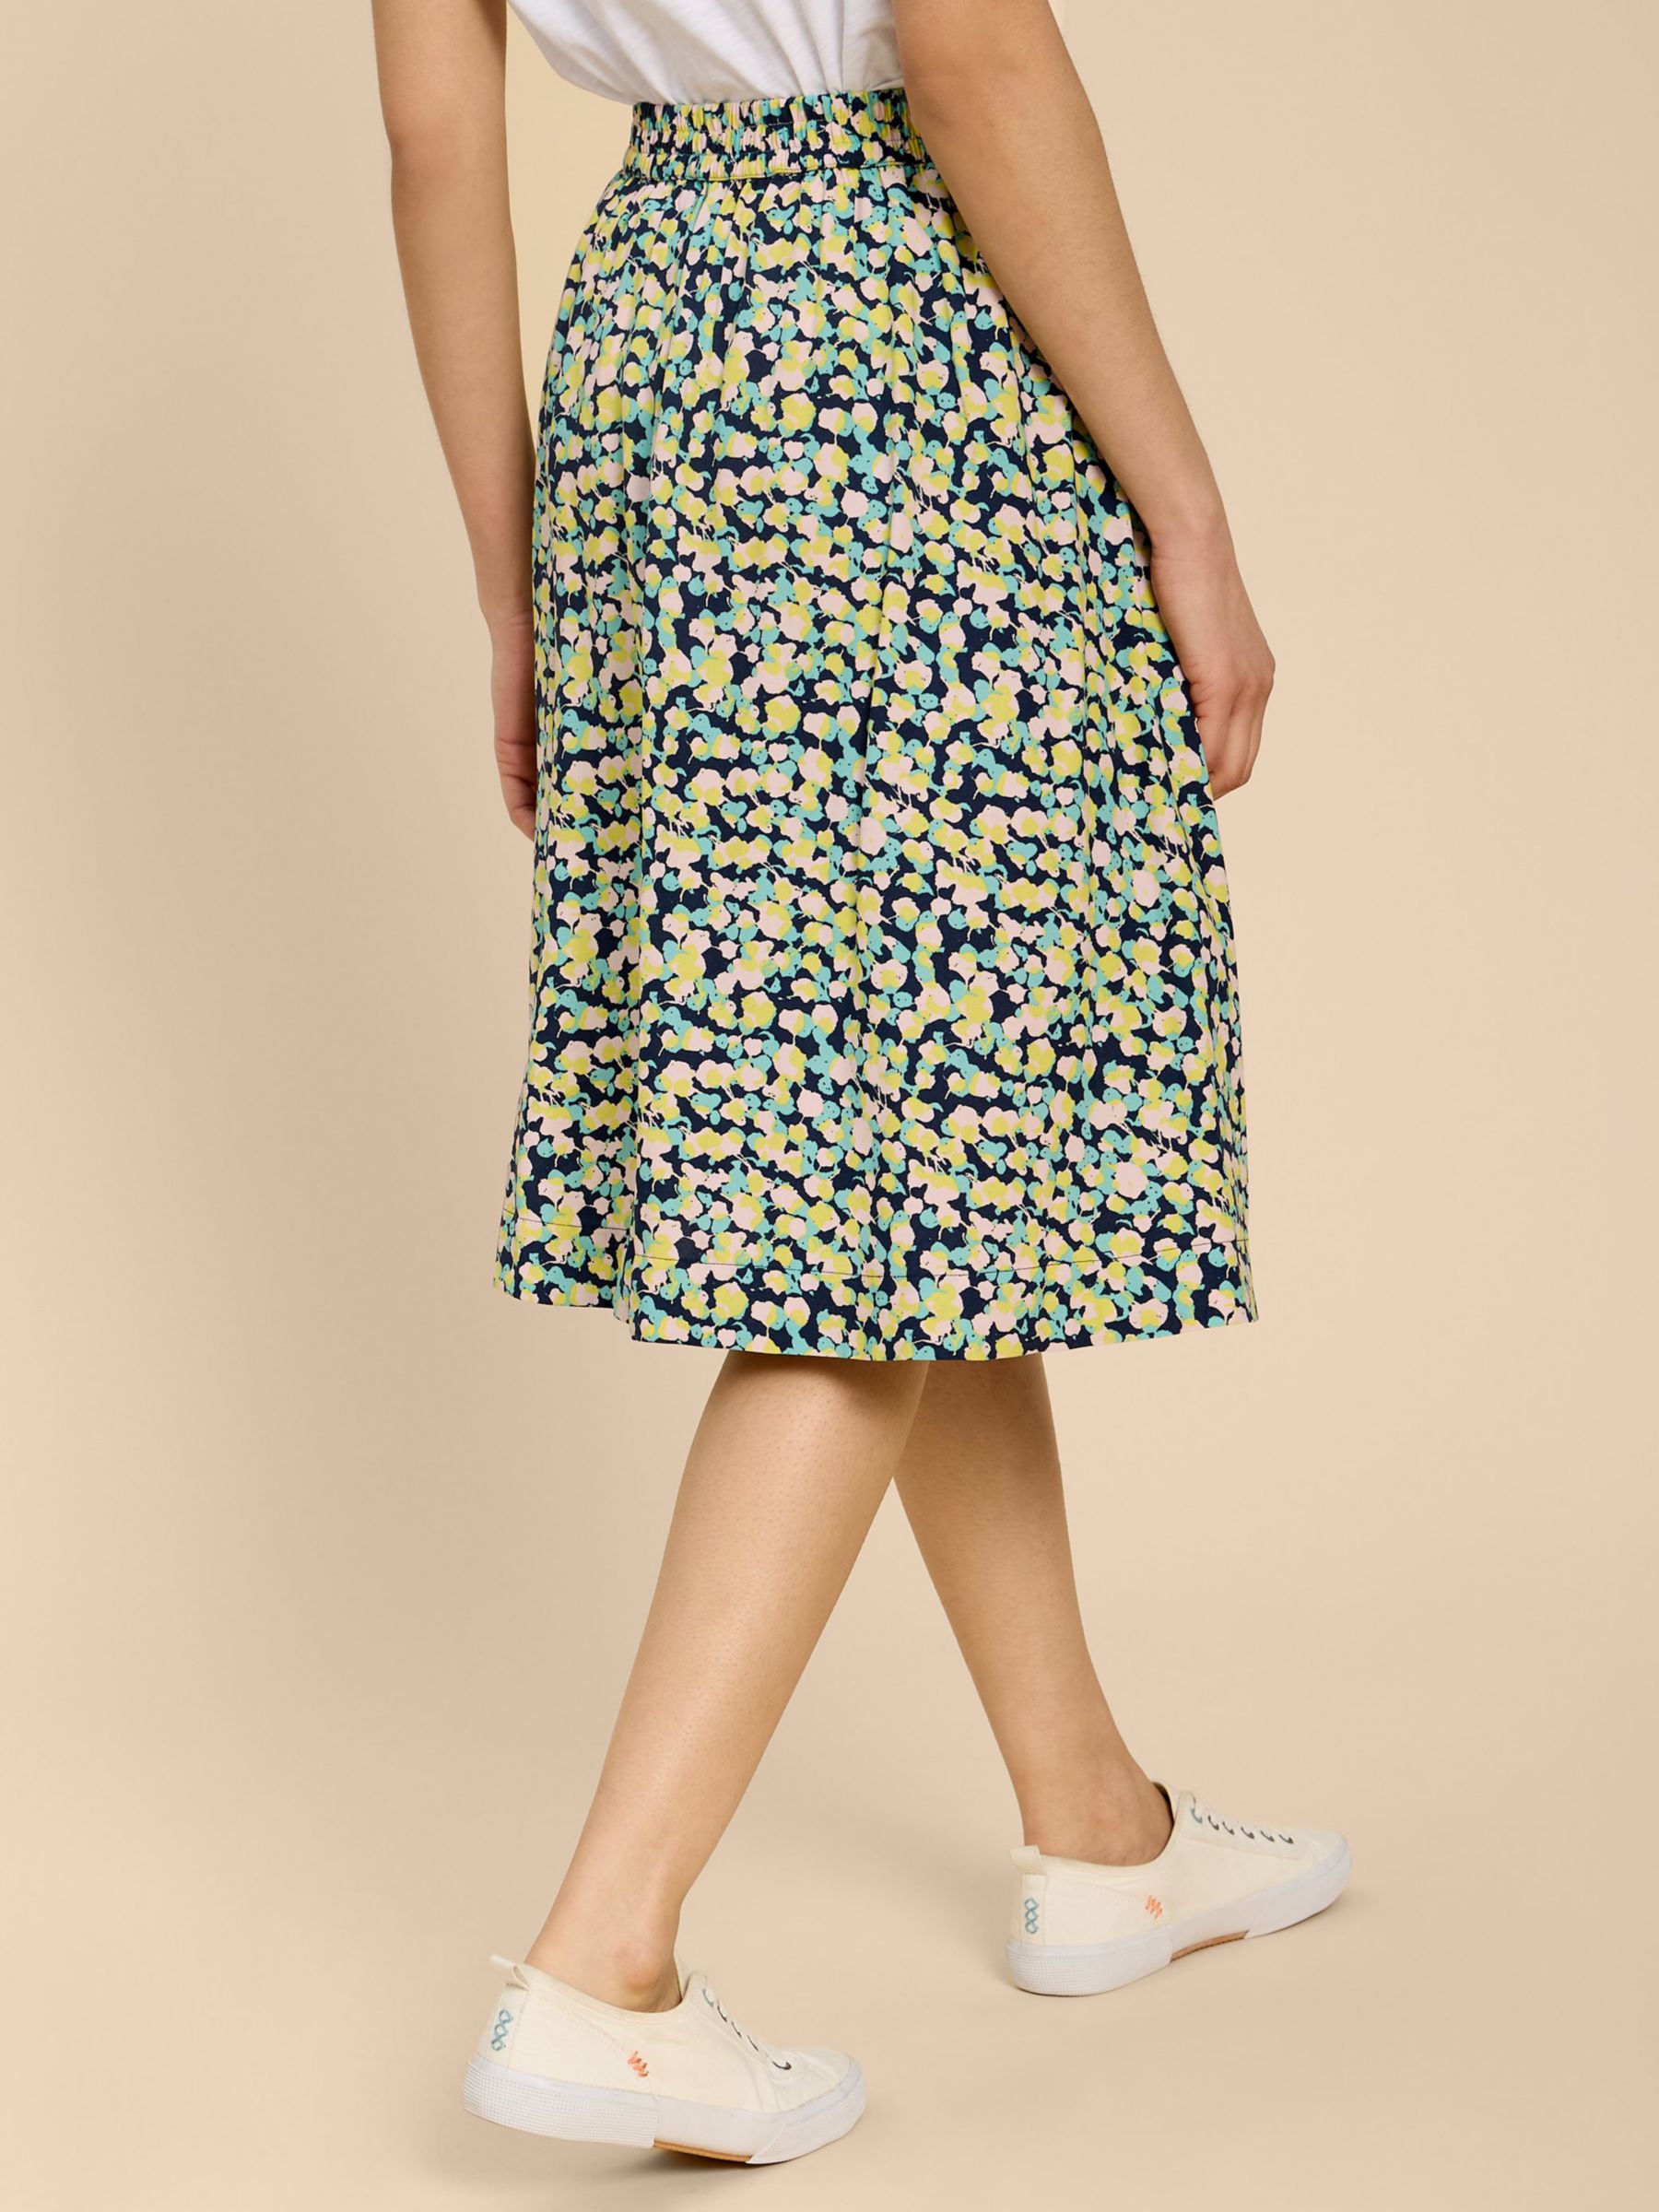 Buy White Stuff Sarah Ecovero Knee Length Skirt, Navy/Multi Online at johnlewis.com